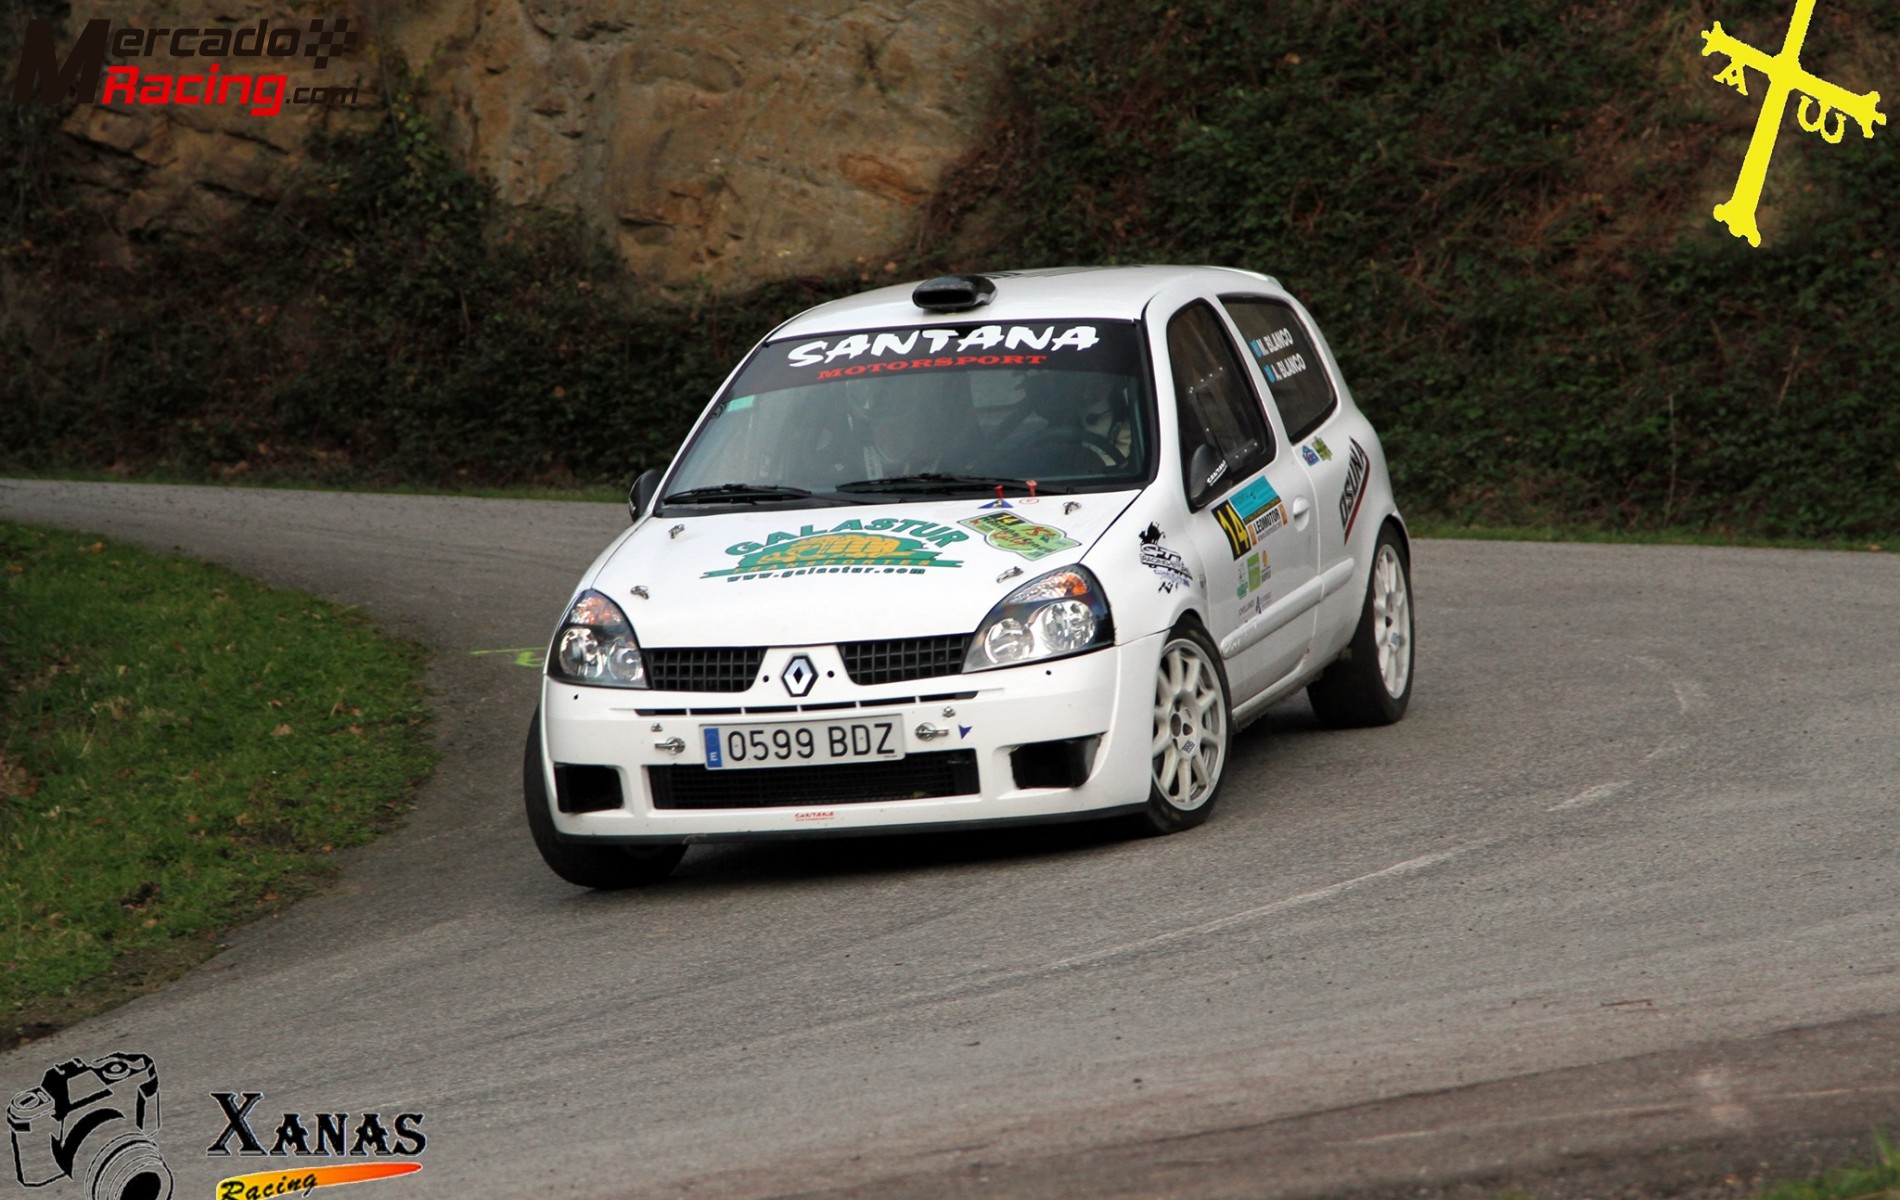 Clio sport gr.x (asturias)